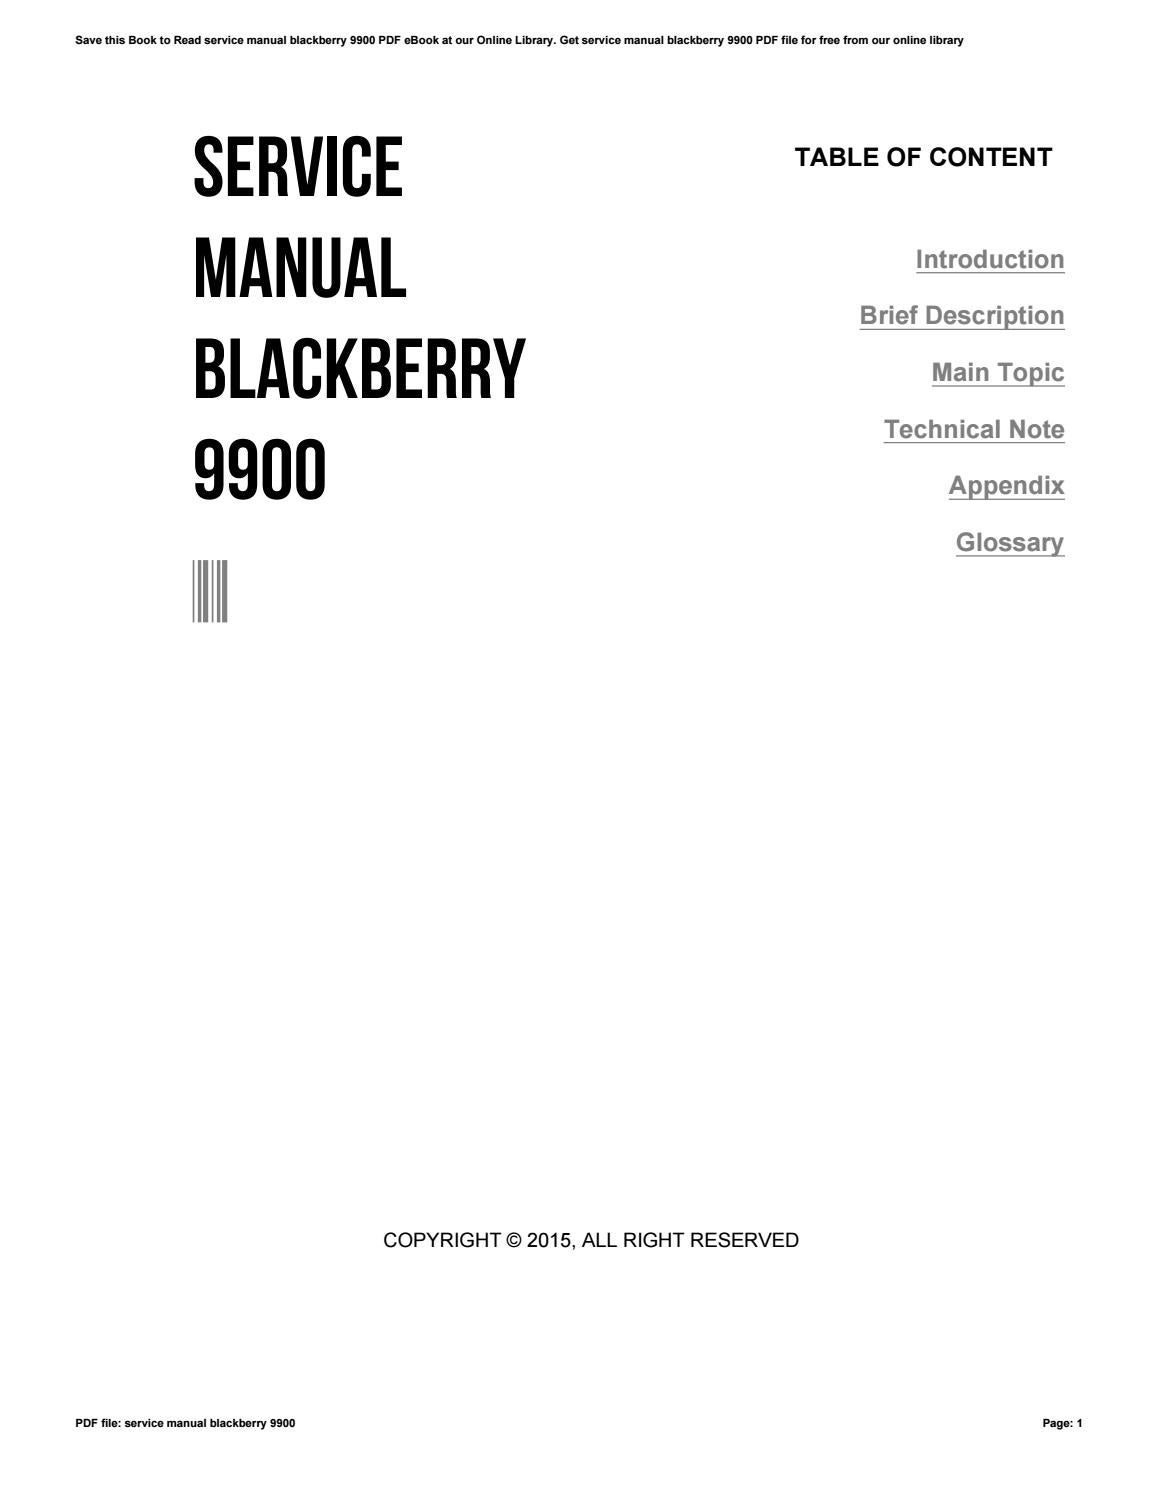 service obtenir des informations introuvables blackberry 9900